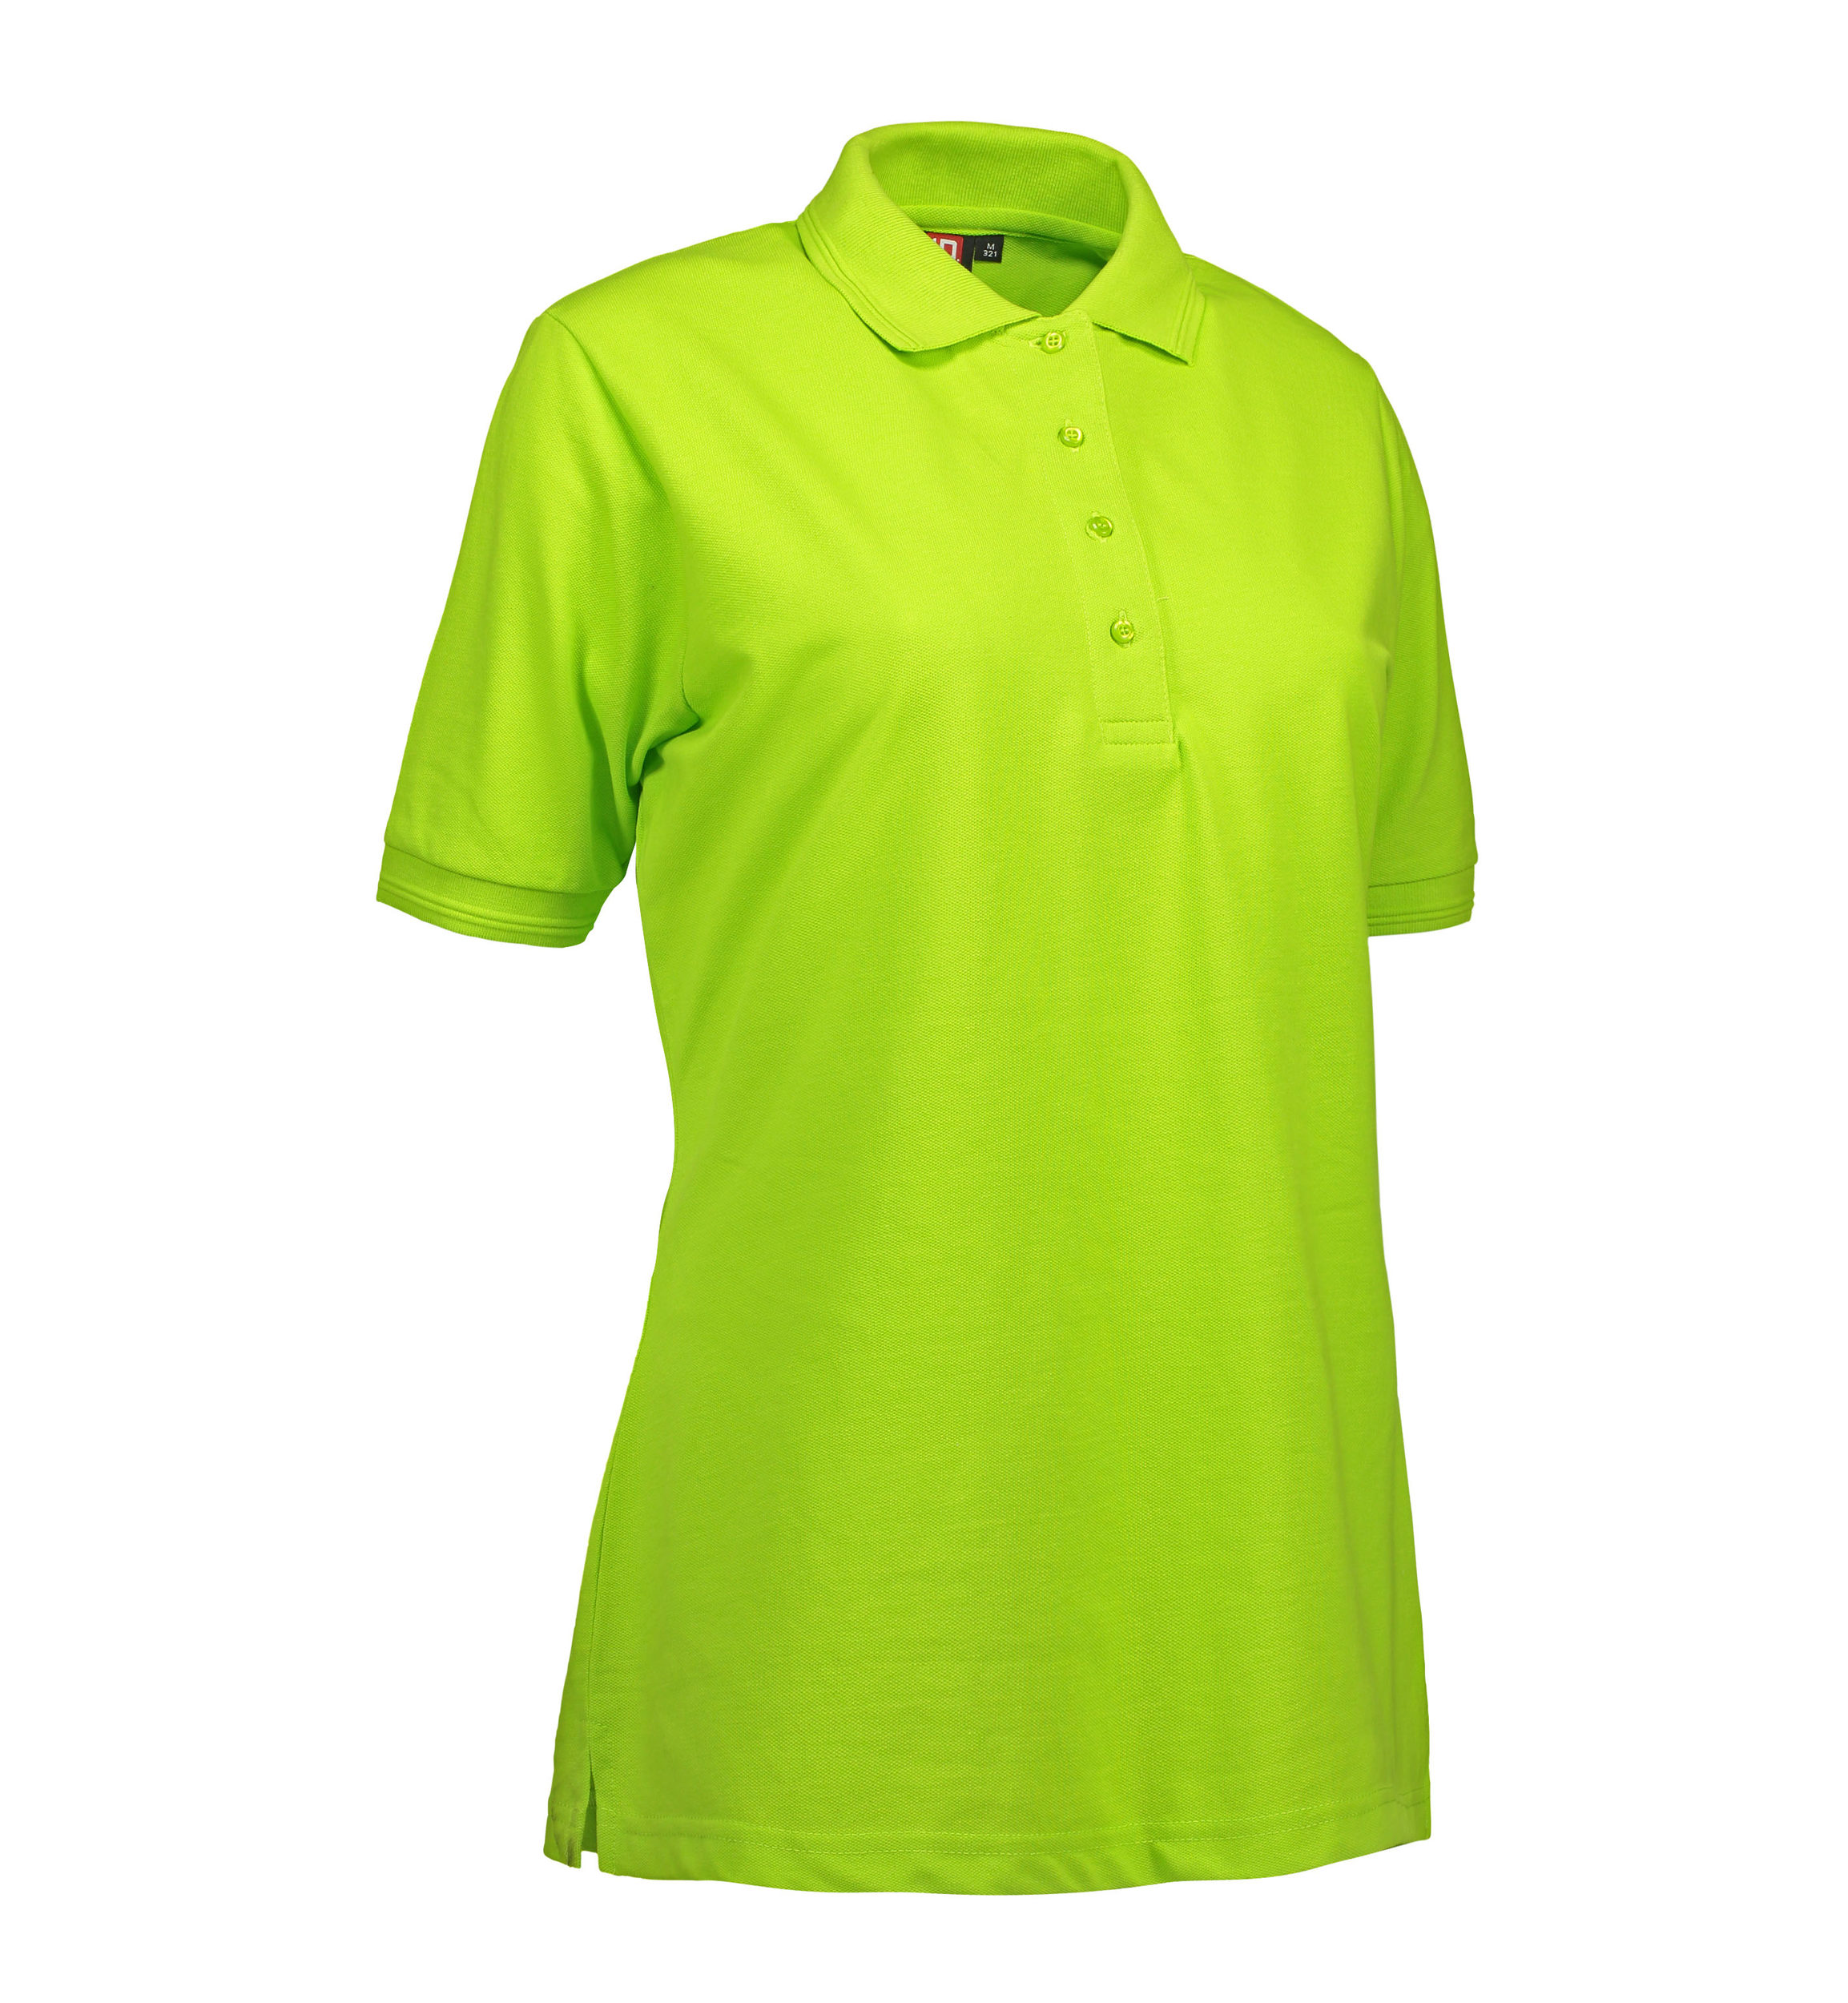 Billede af Lime farvet dame polo t-shirt i slidstærkt materiale - XL hos Sygeplejebutikken.dk